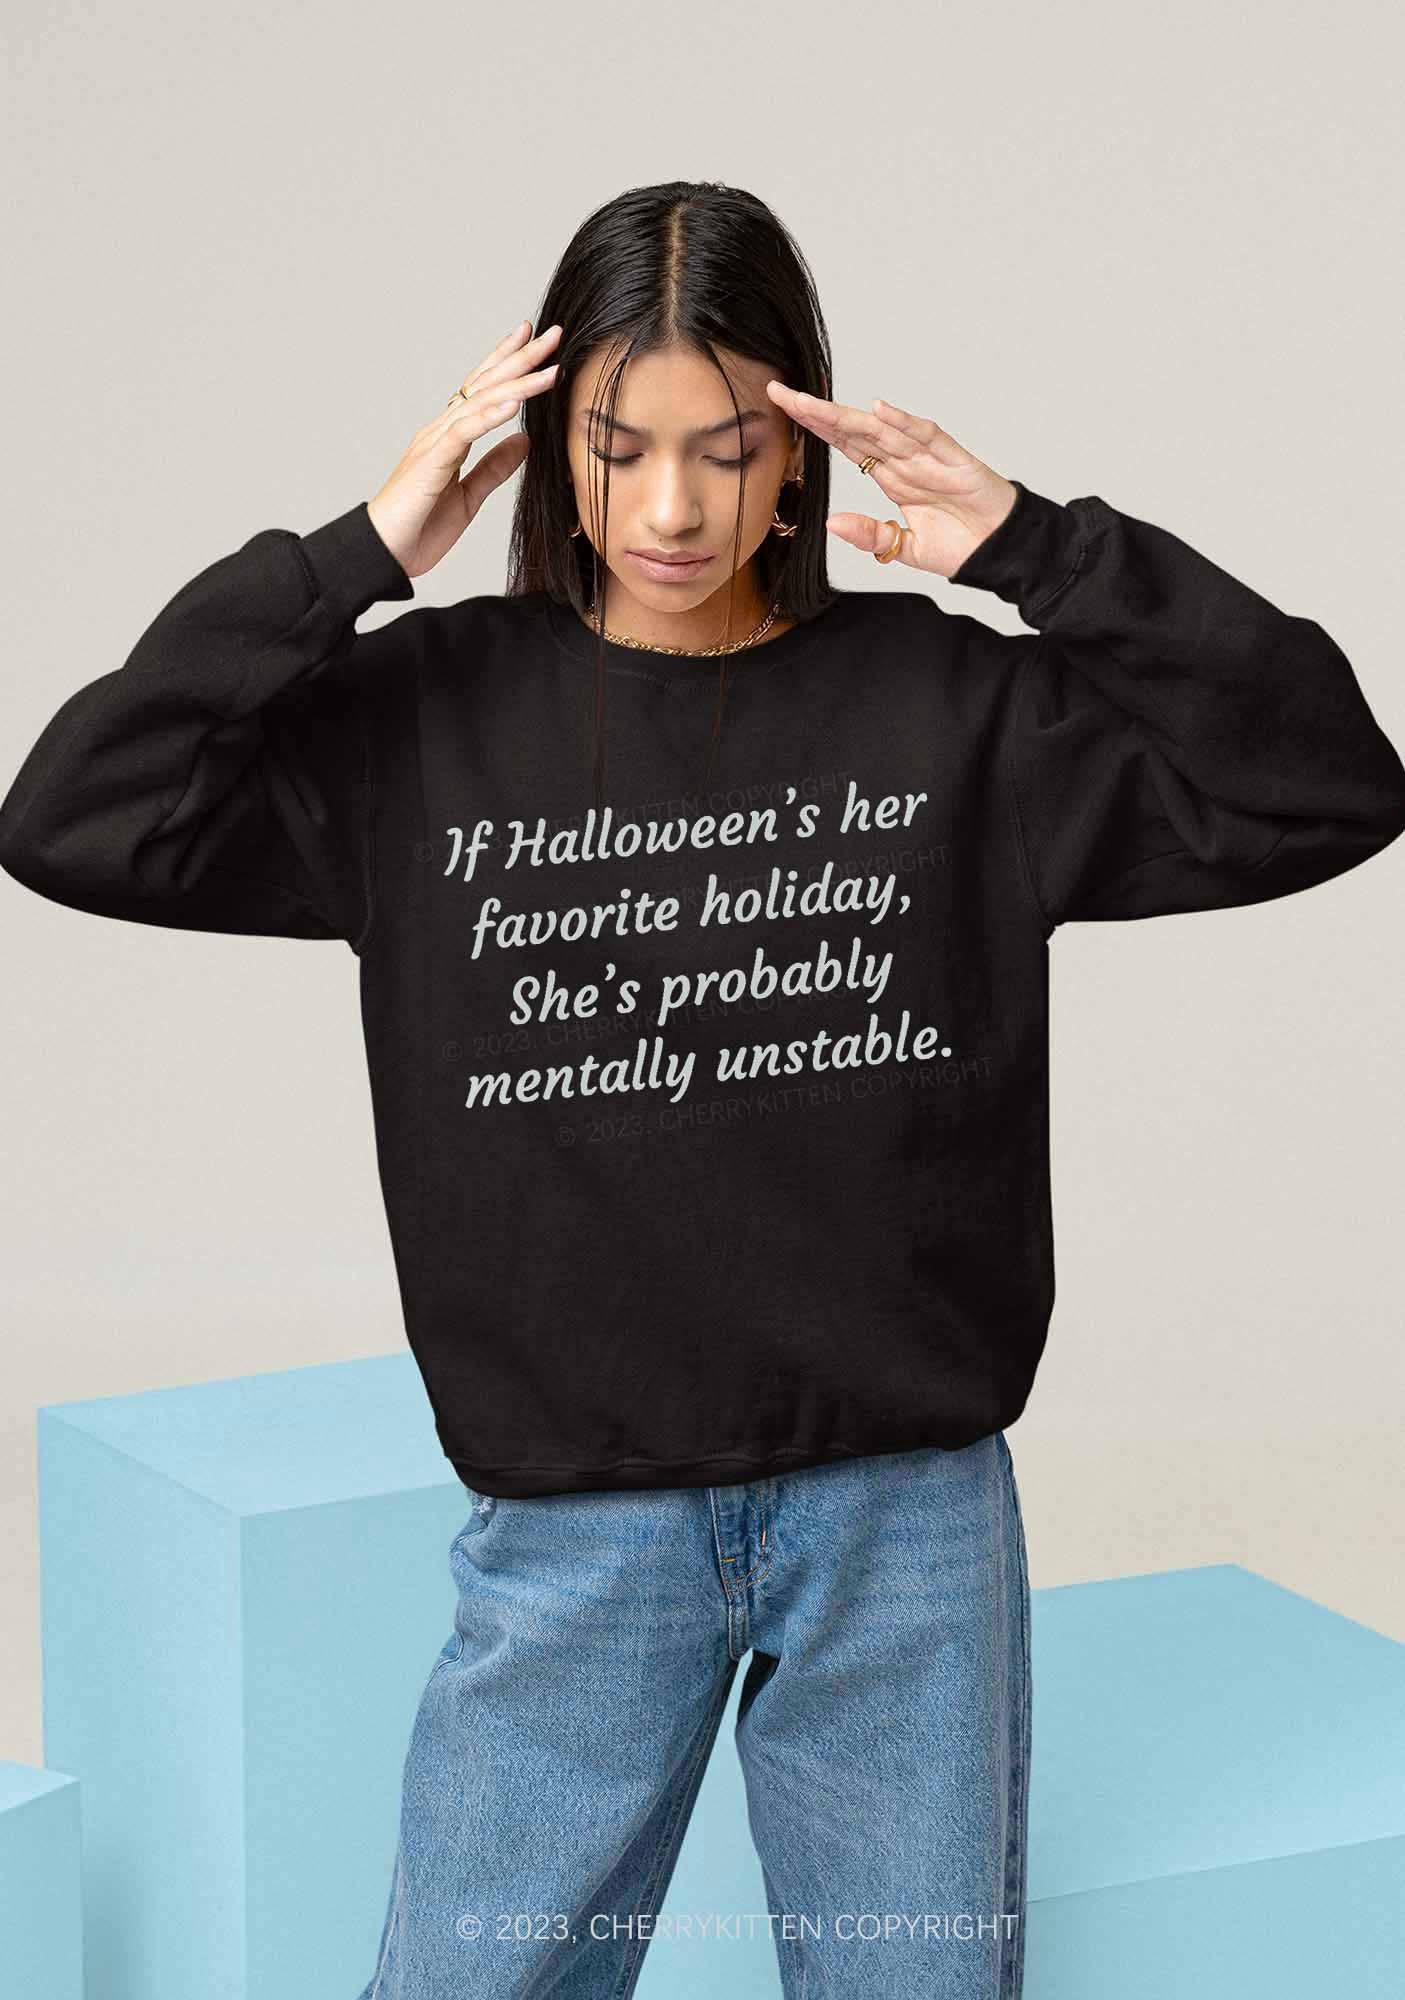 Halloween's Her Favorite Holiday Y2K Sweatshirt Cherrykitten